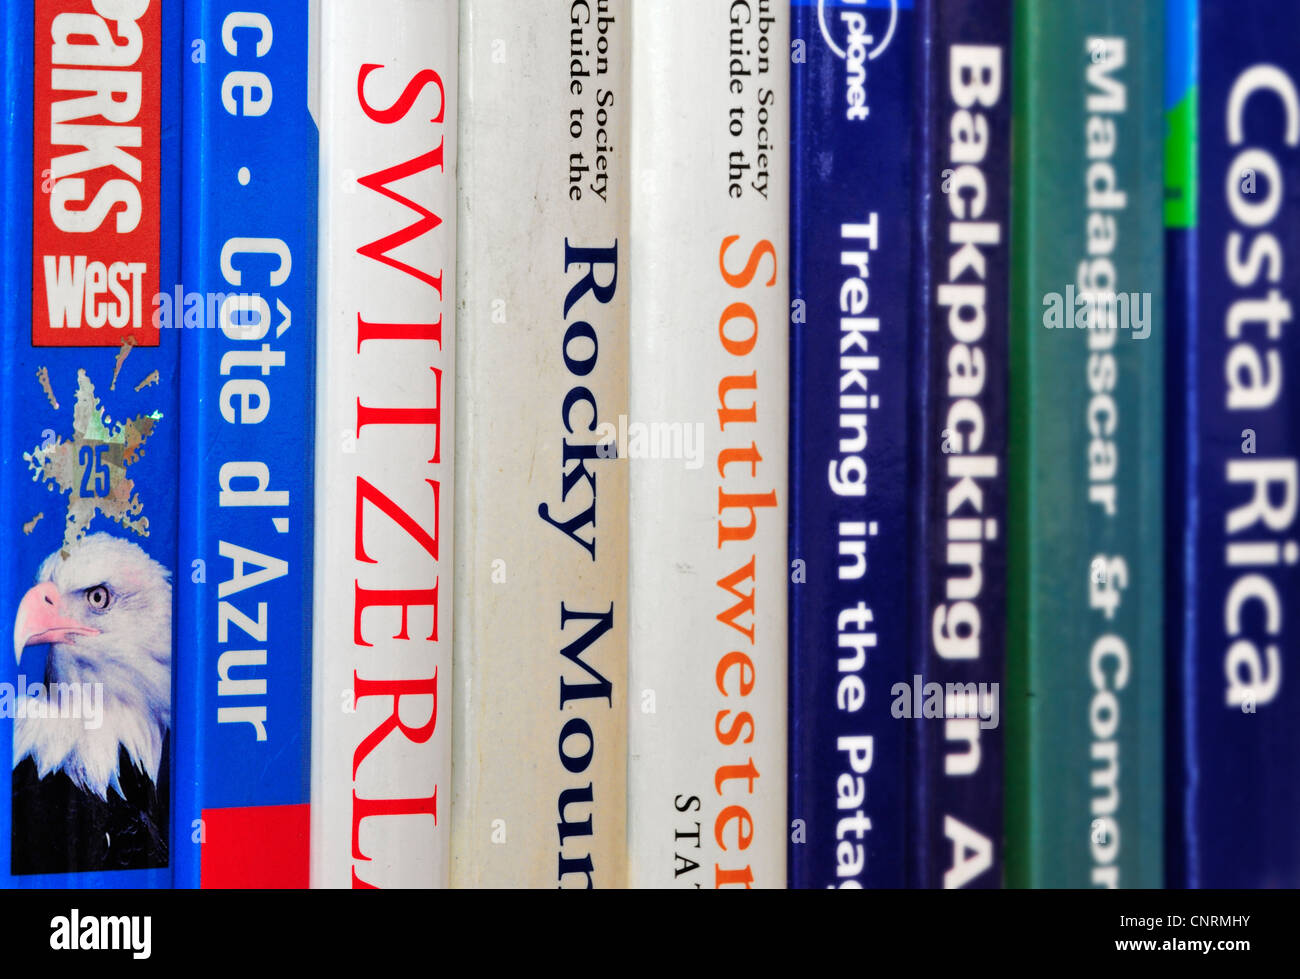 Kollektion zeigt Auswahl an Reiseführern und Reiseführern über weltweite Urlaubsziele auf einem Bücherregal Bücherregal Stockfoto